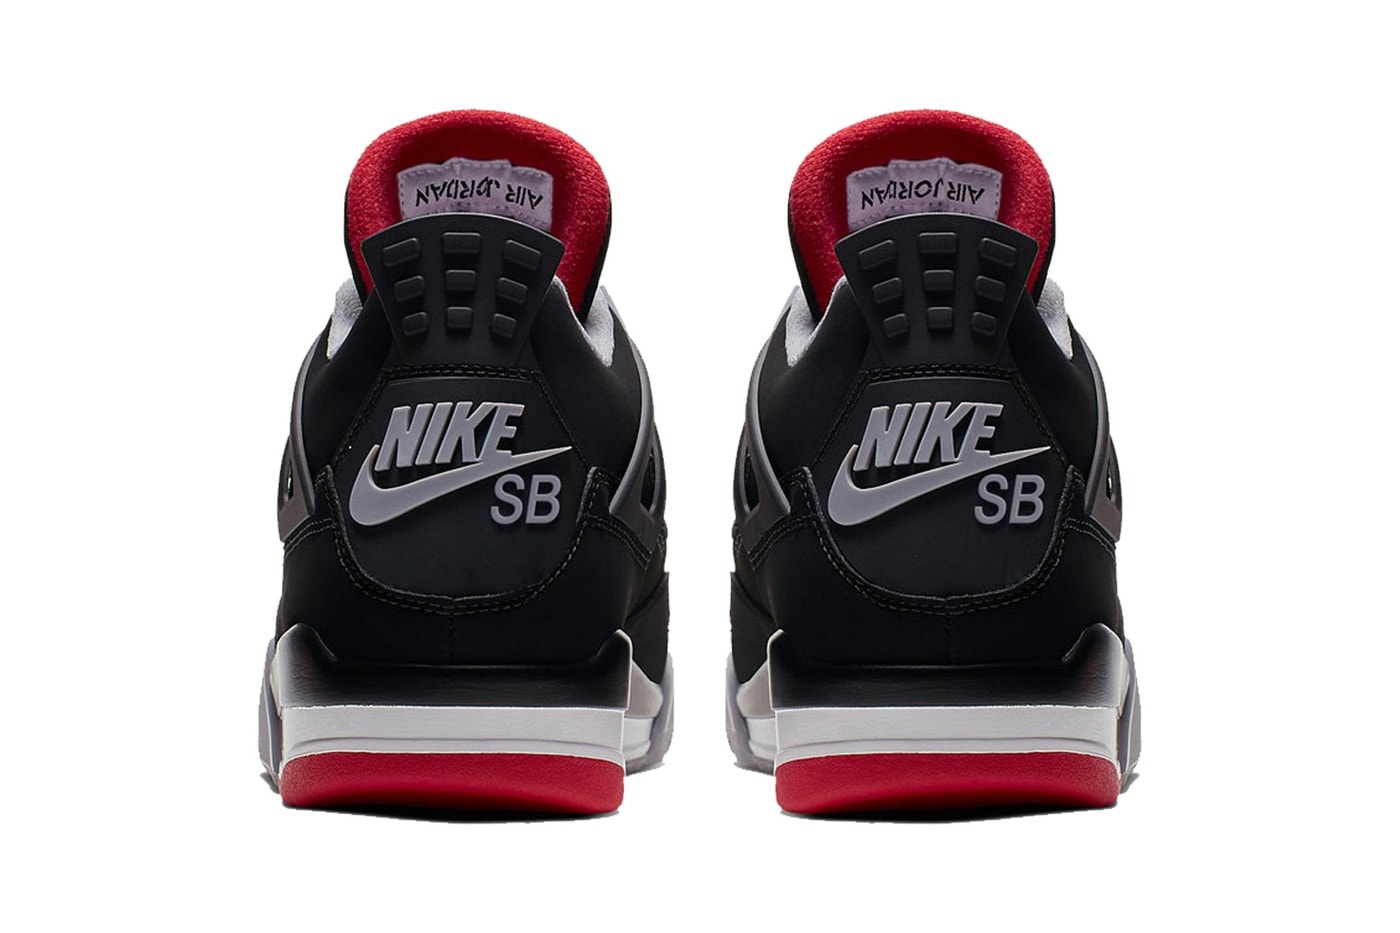 消息稱 Nike SB 將攜手 Jordan Brand 推出 Air Jordan 4 聯名鞋款